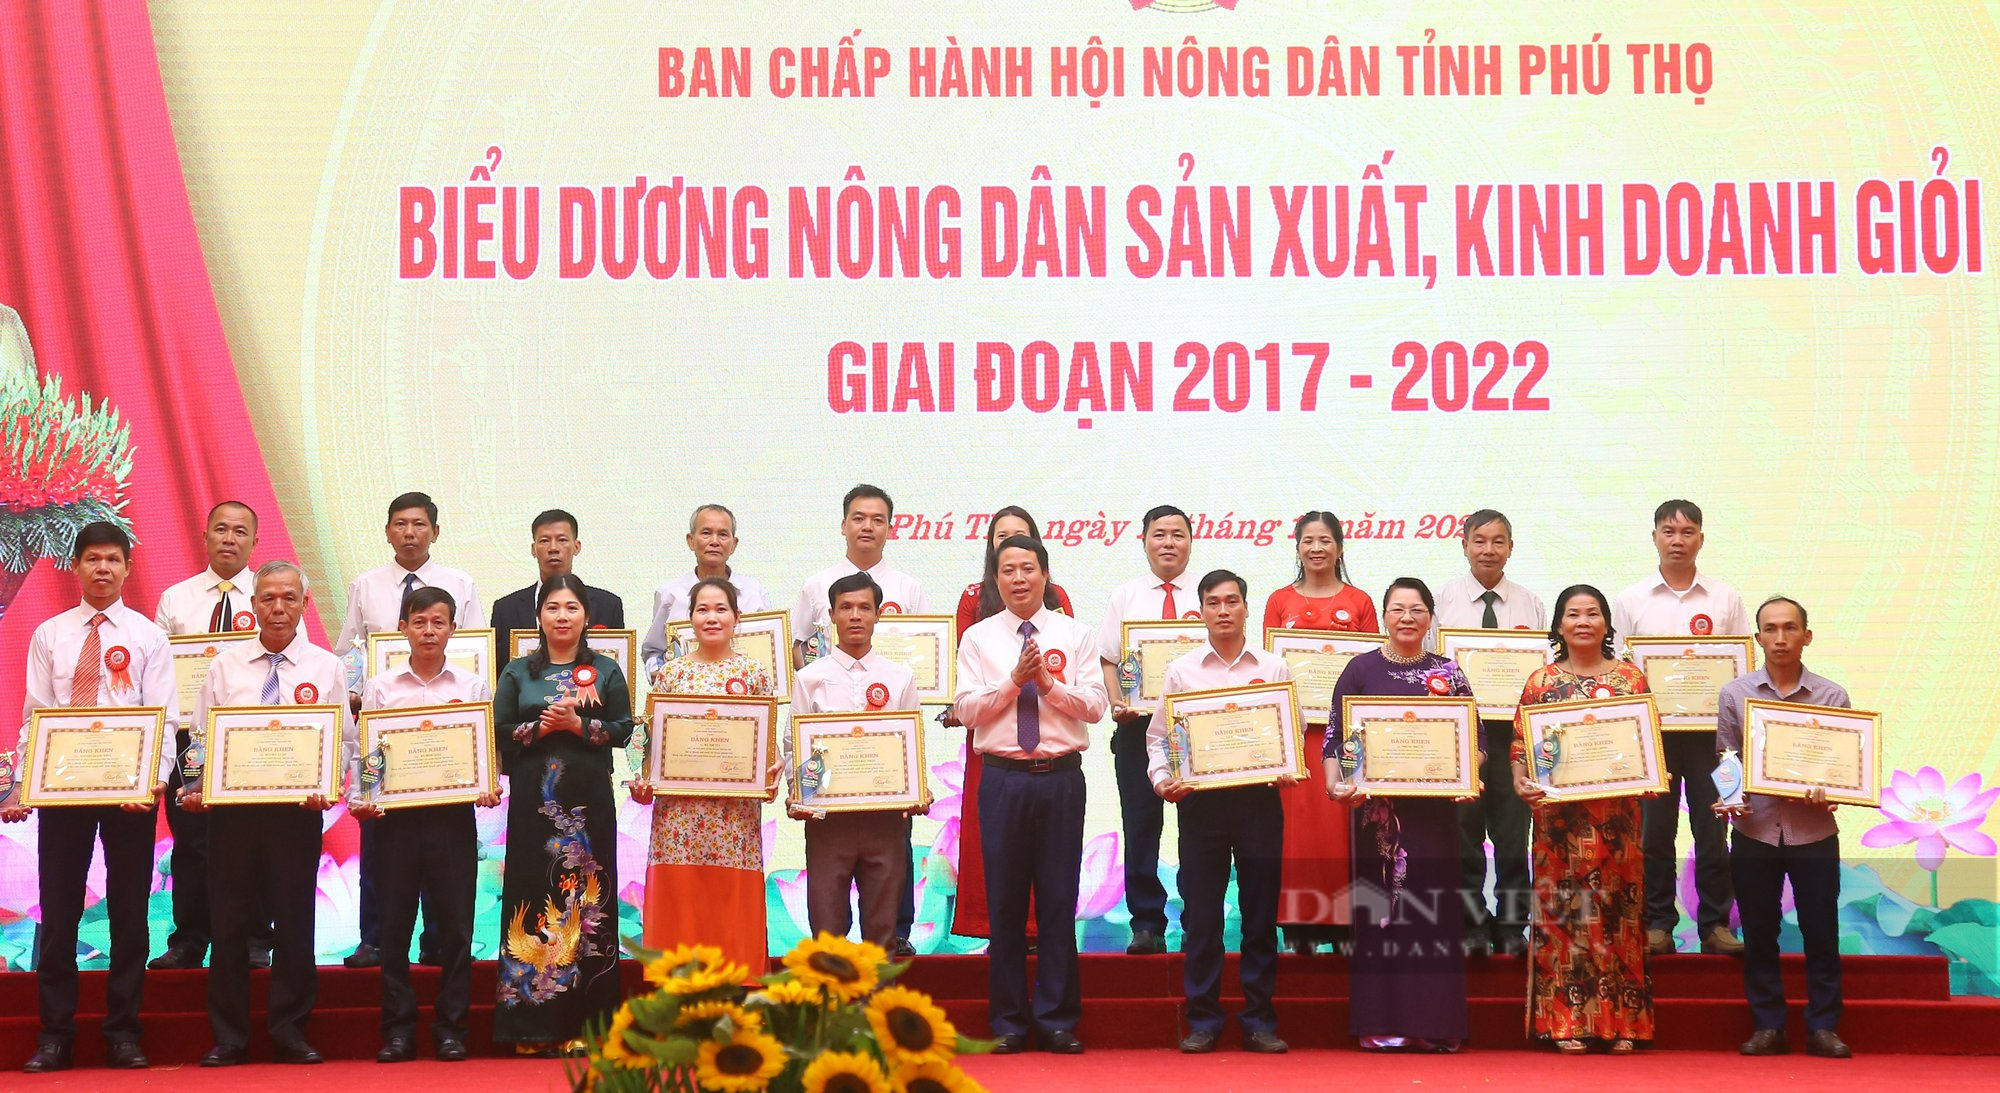 Khen thưởng 13 tập thể, 130 nông dân trong phong trào nông dân sản xuất kinh doanh giỏi 5 năm qua ở Phú Thọ - Ảnh 7.